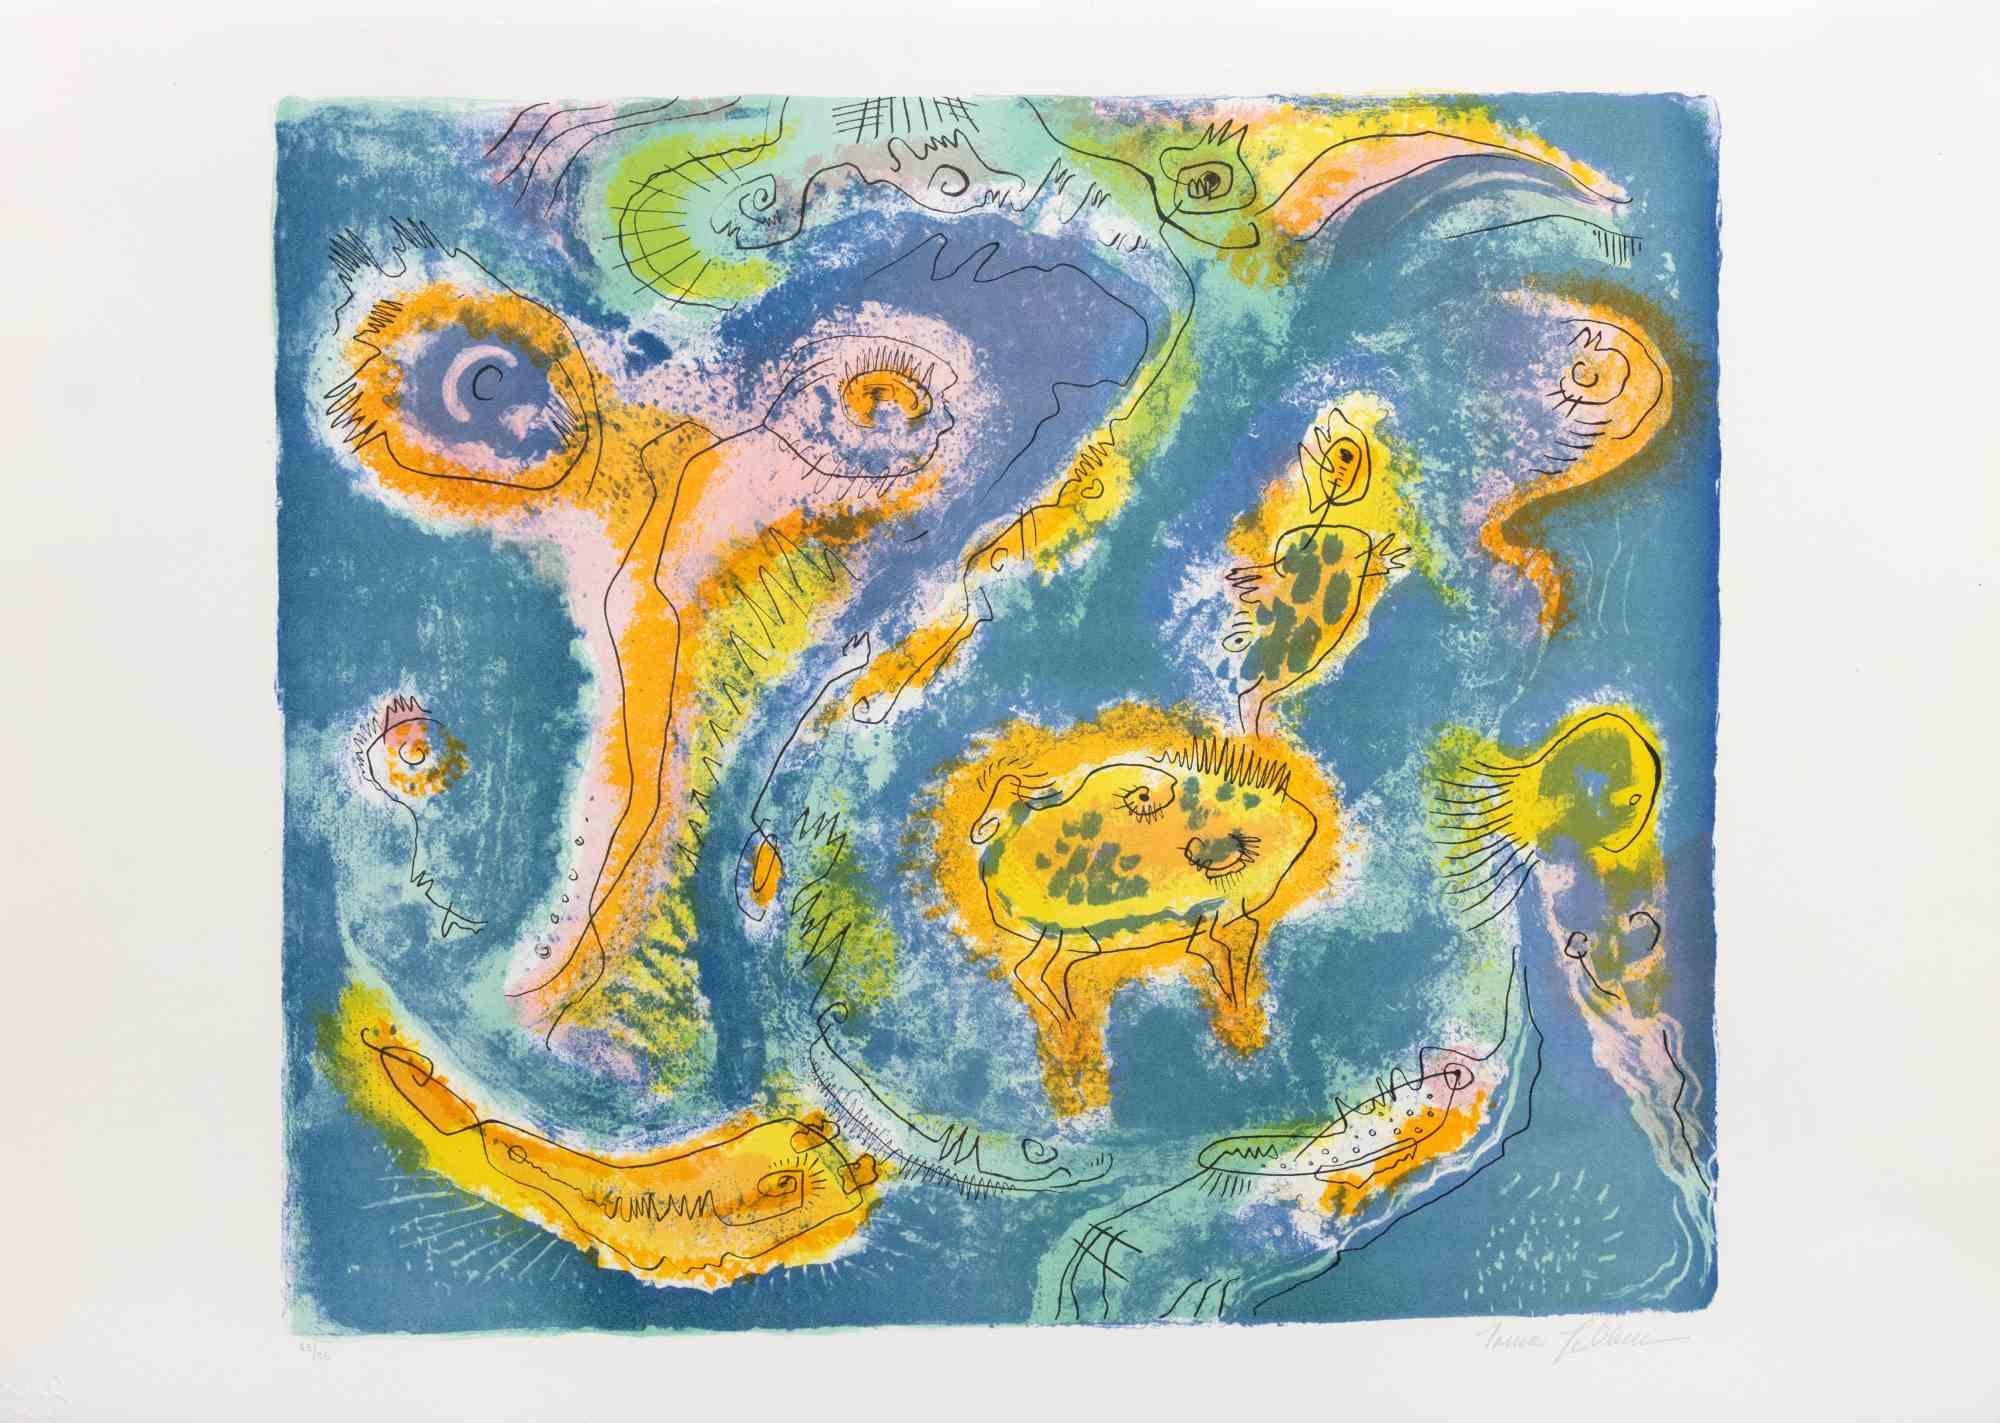 L'étang est une œuvre d'art contemporain réalisée par Le Pond dans les années 1970.

Lithographie en couleurs mélangées.

Signé à la main dans la marge inférieure.

Numéroté dans la marge inférieure.

Édition de 63/95.